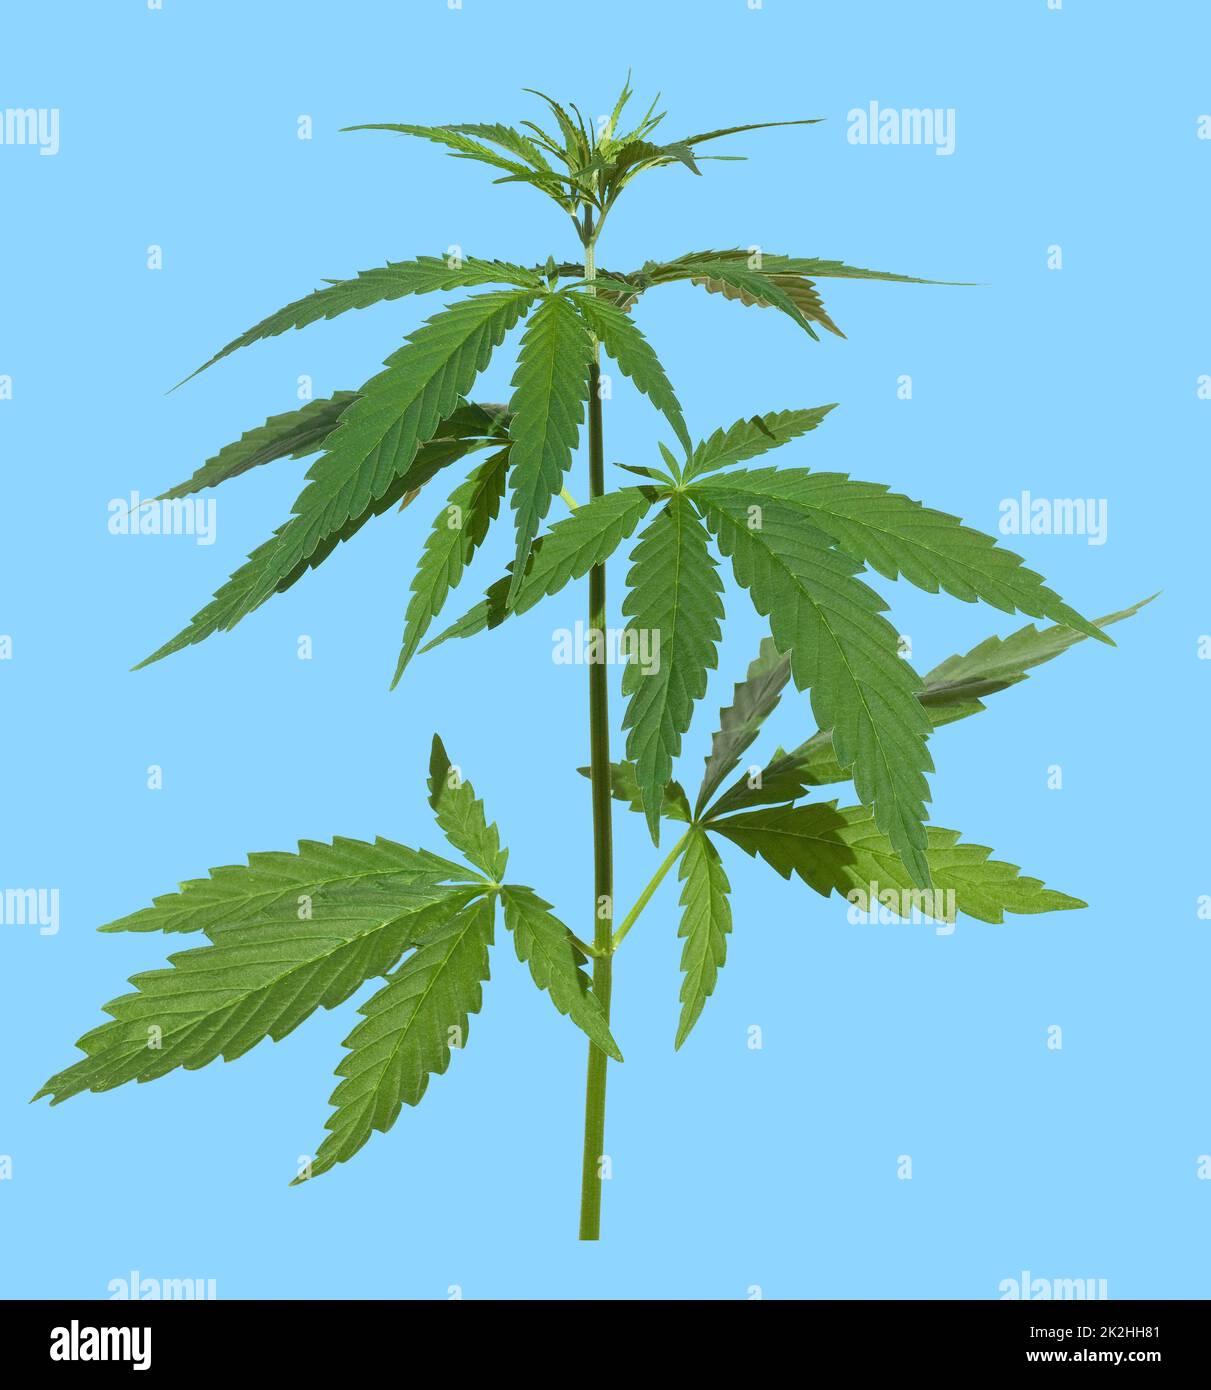 Plante de chanvre,cannabis sativa Banque D'Images